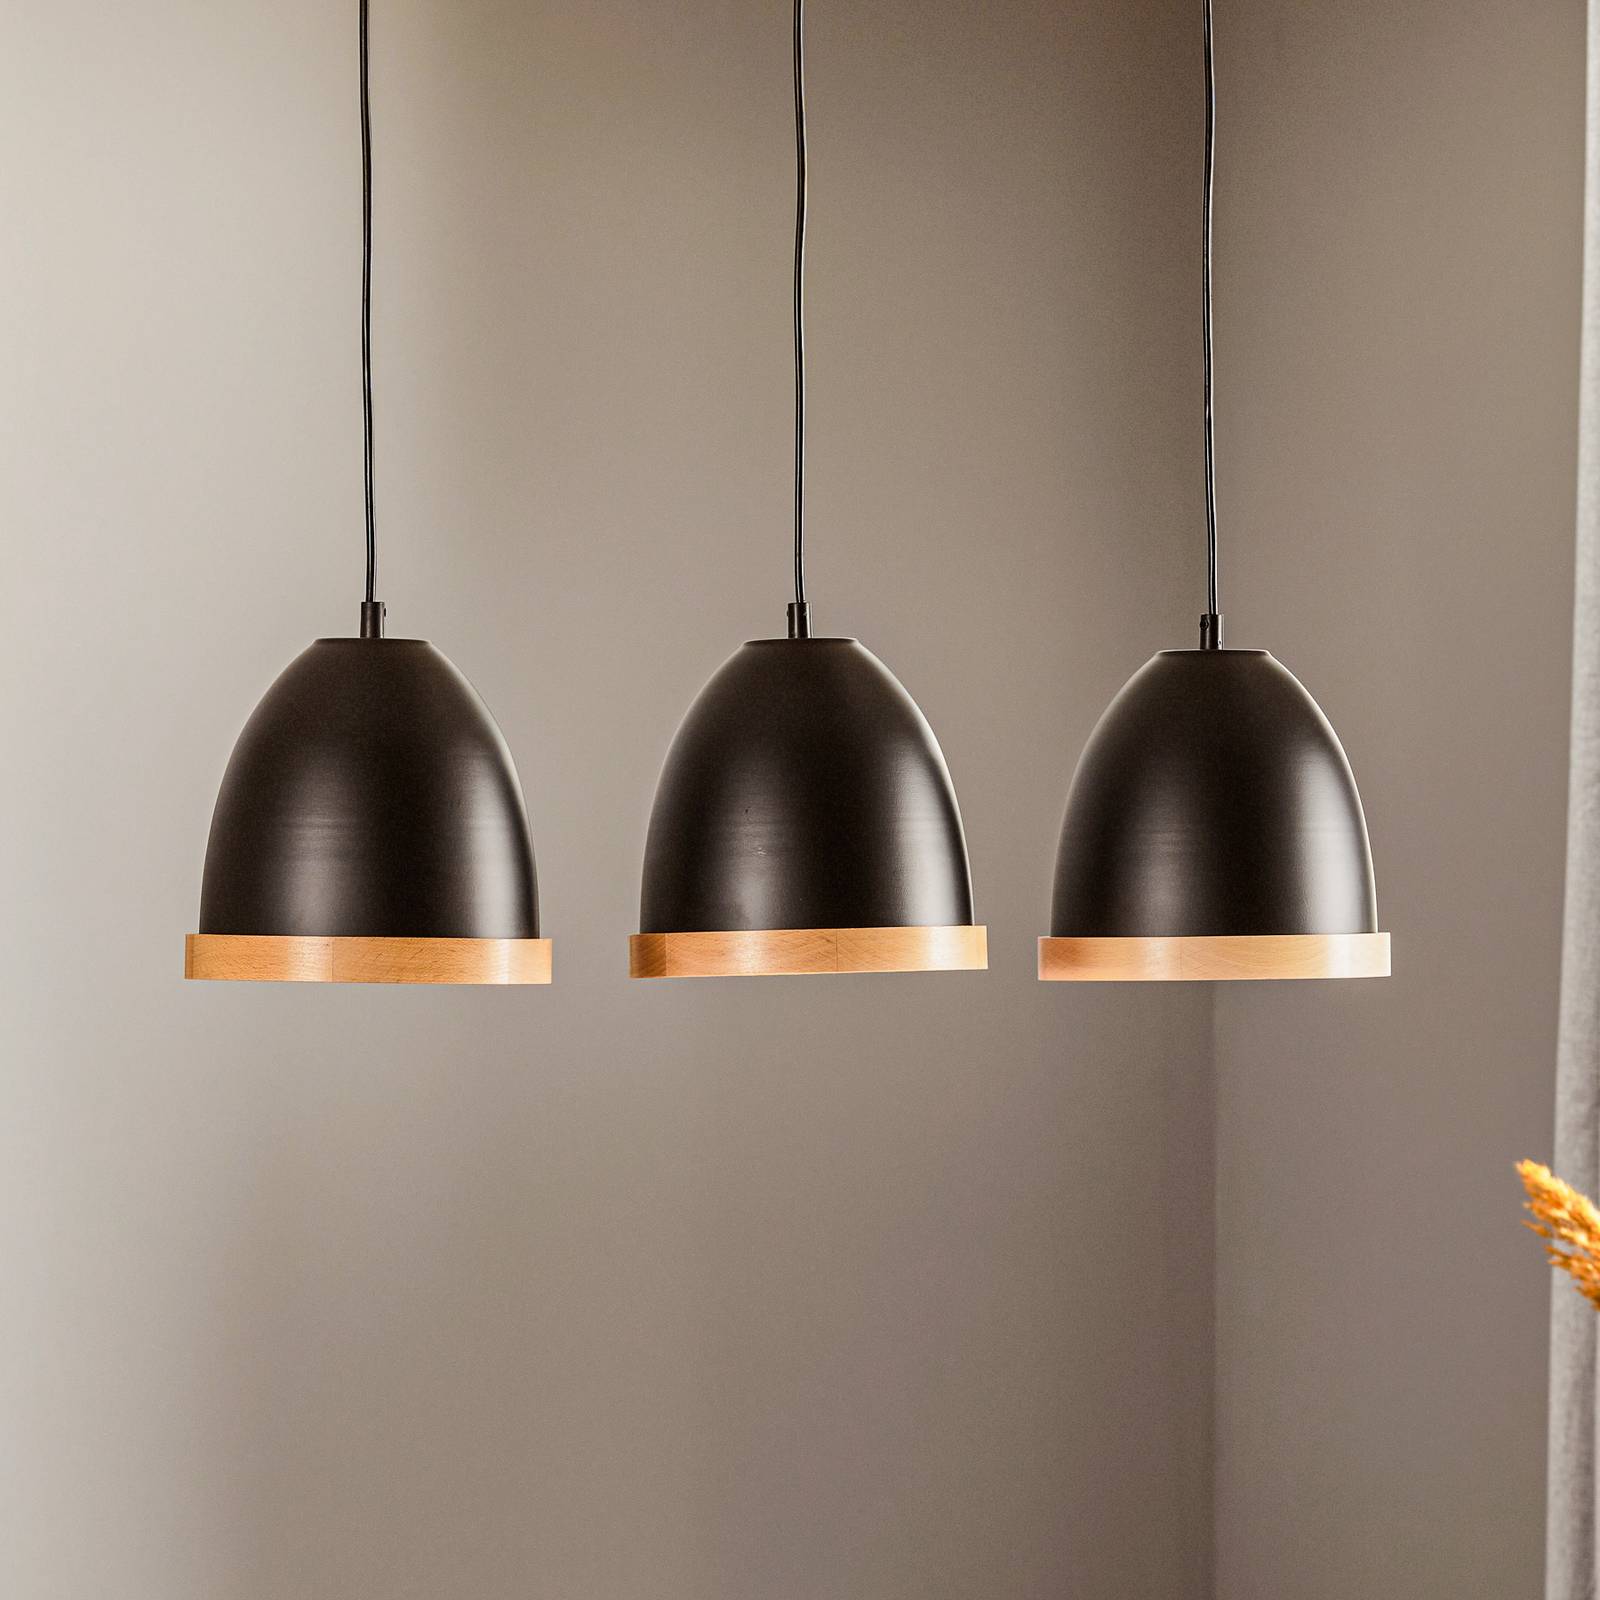 Eko-light studio függő lámpa fa dísszel, 3 izzós fekete